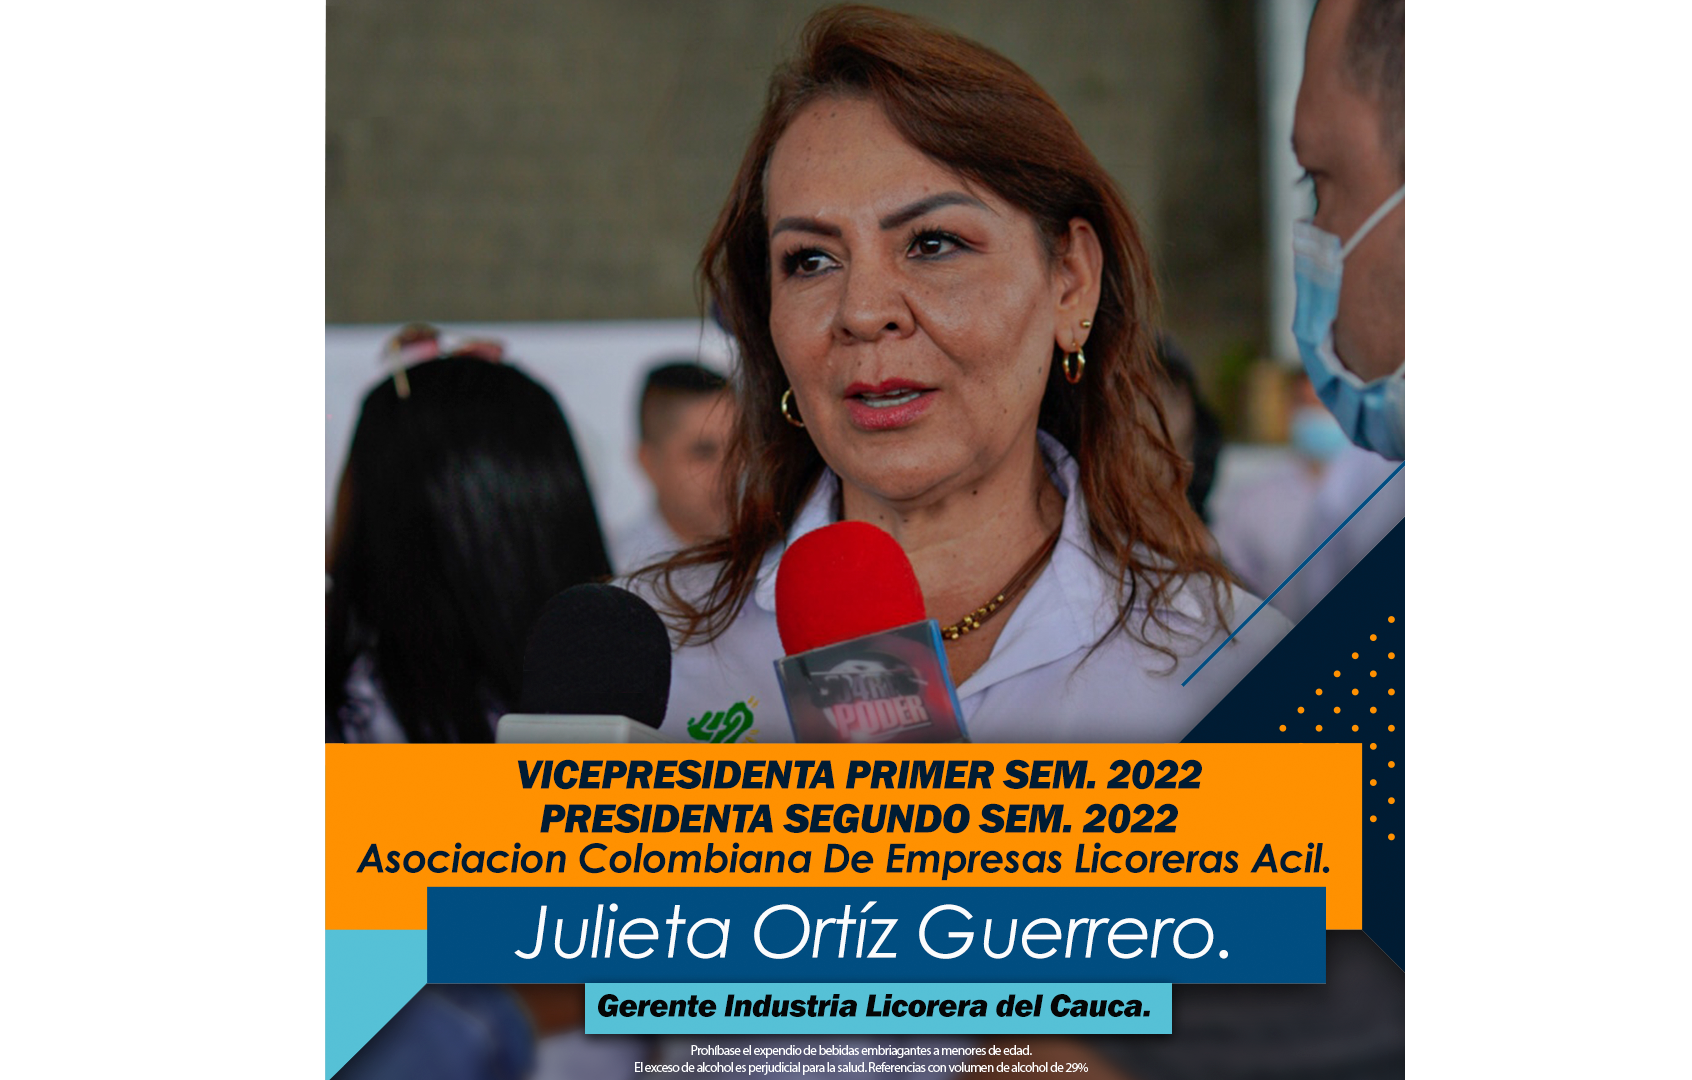                                              Vicepresidenta y próxima presidenta de la junta directiva de la ACIL 2022
                                            